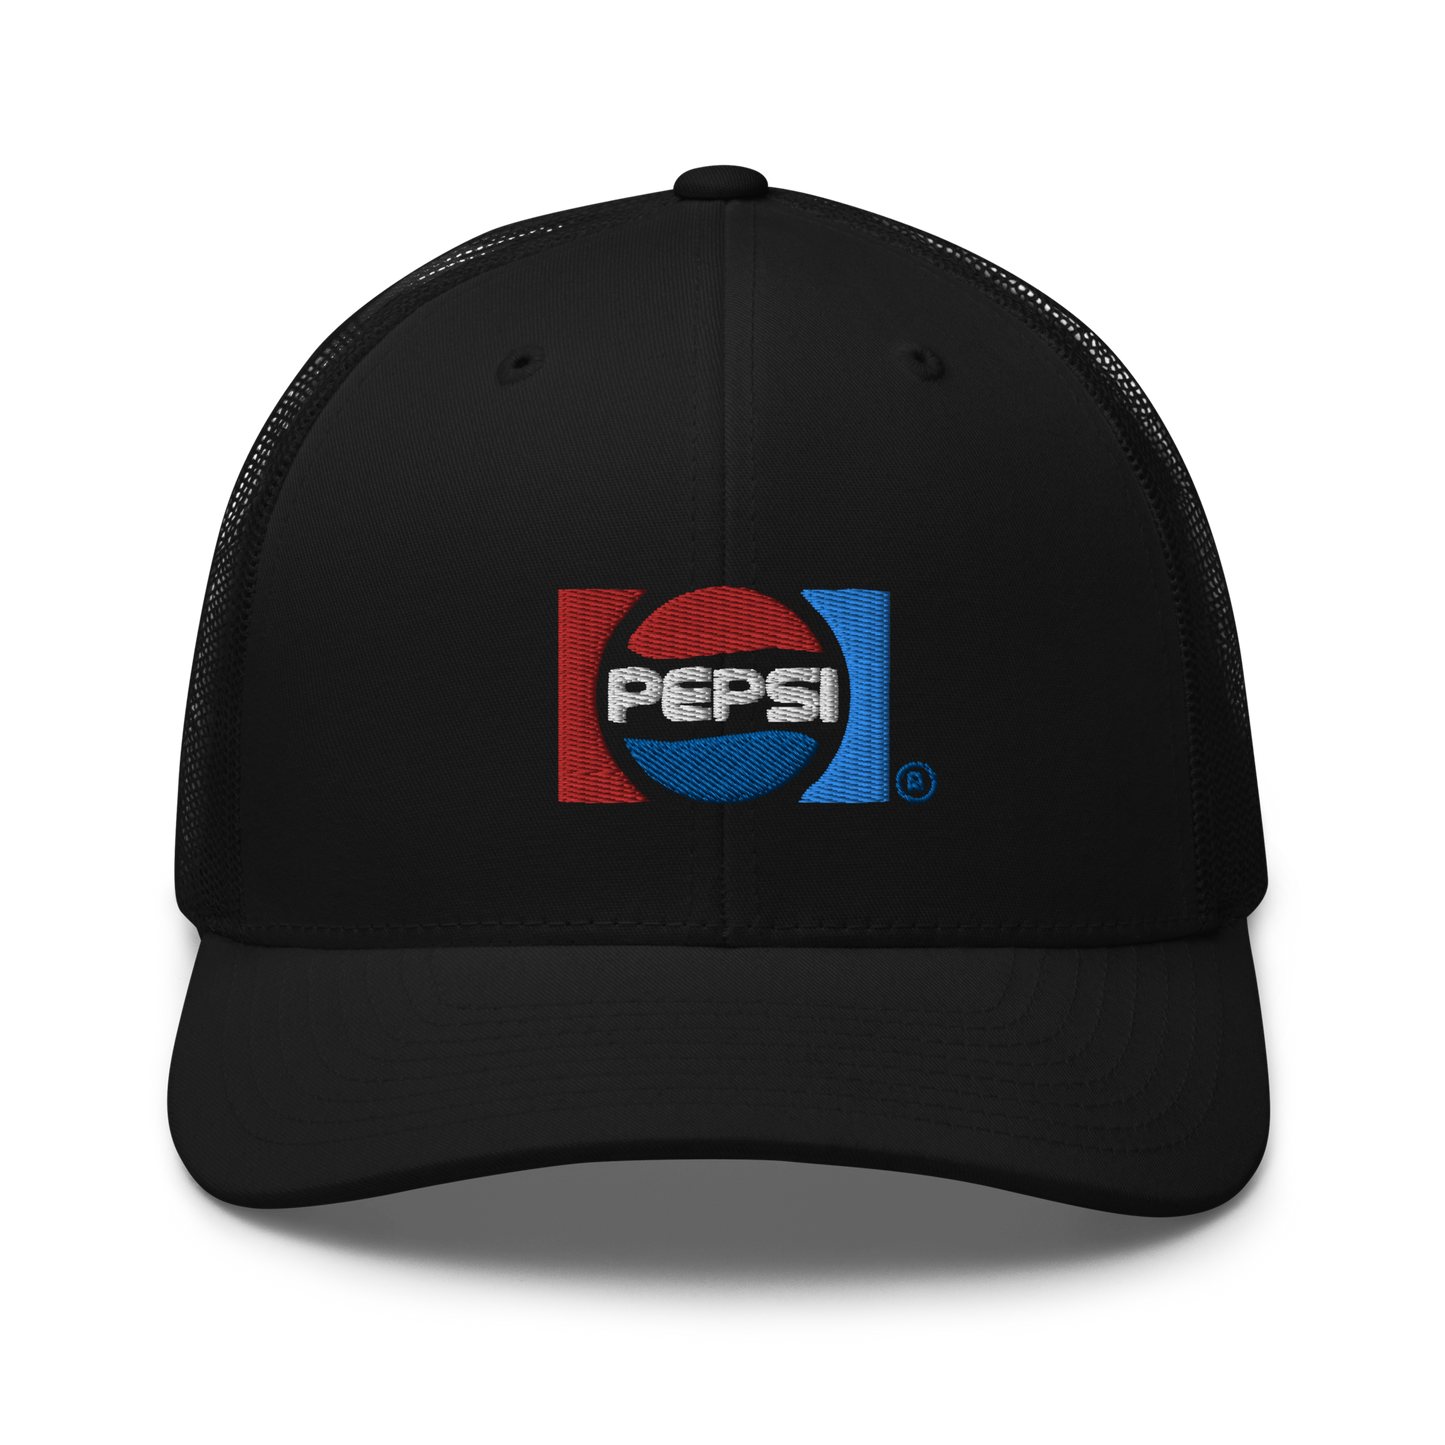 Pepsi Retro Trucker Hat